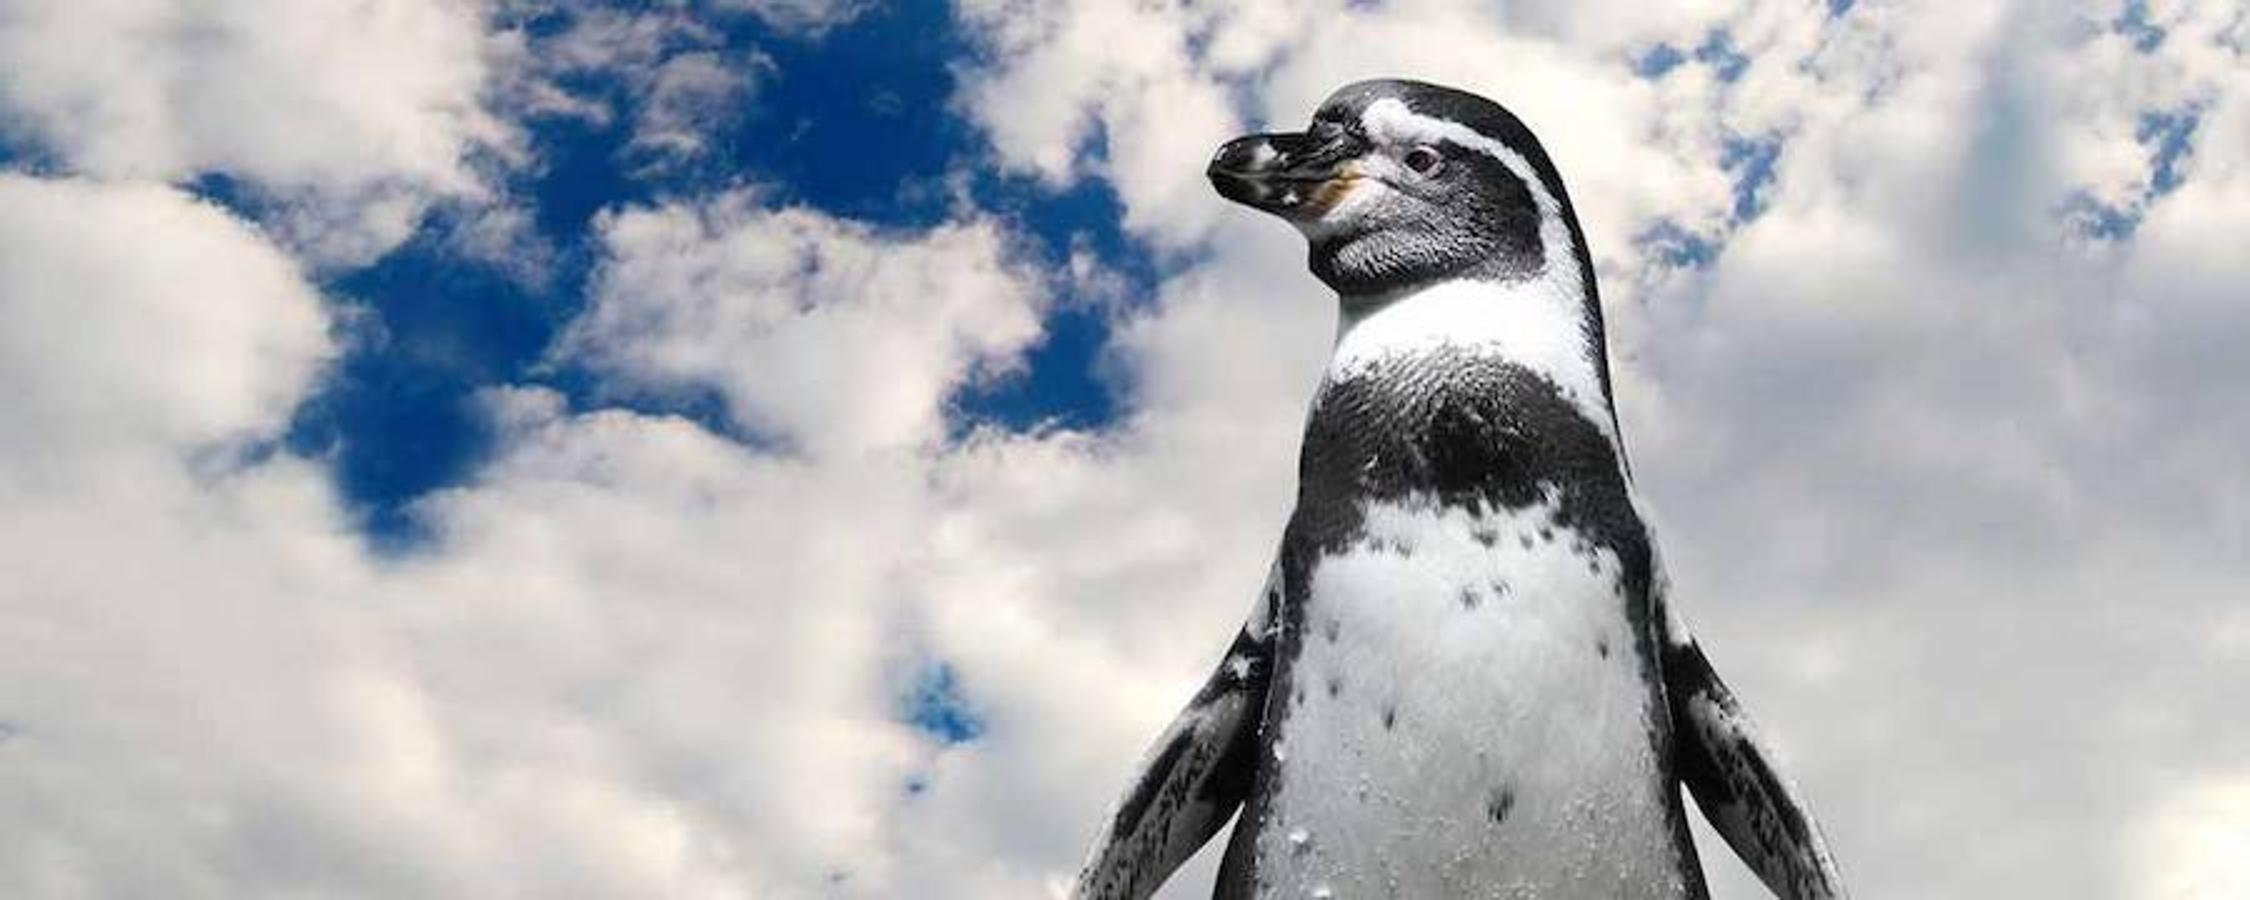 Día de los pingüinos. BirdLife International ha iniciado la campaña «Adopta a un pingüino»: <a href="https://penguin.birdlife.org/es">https://penguin.birdlife.org/es</a>